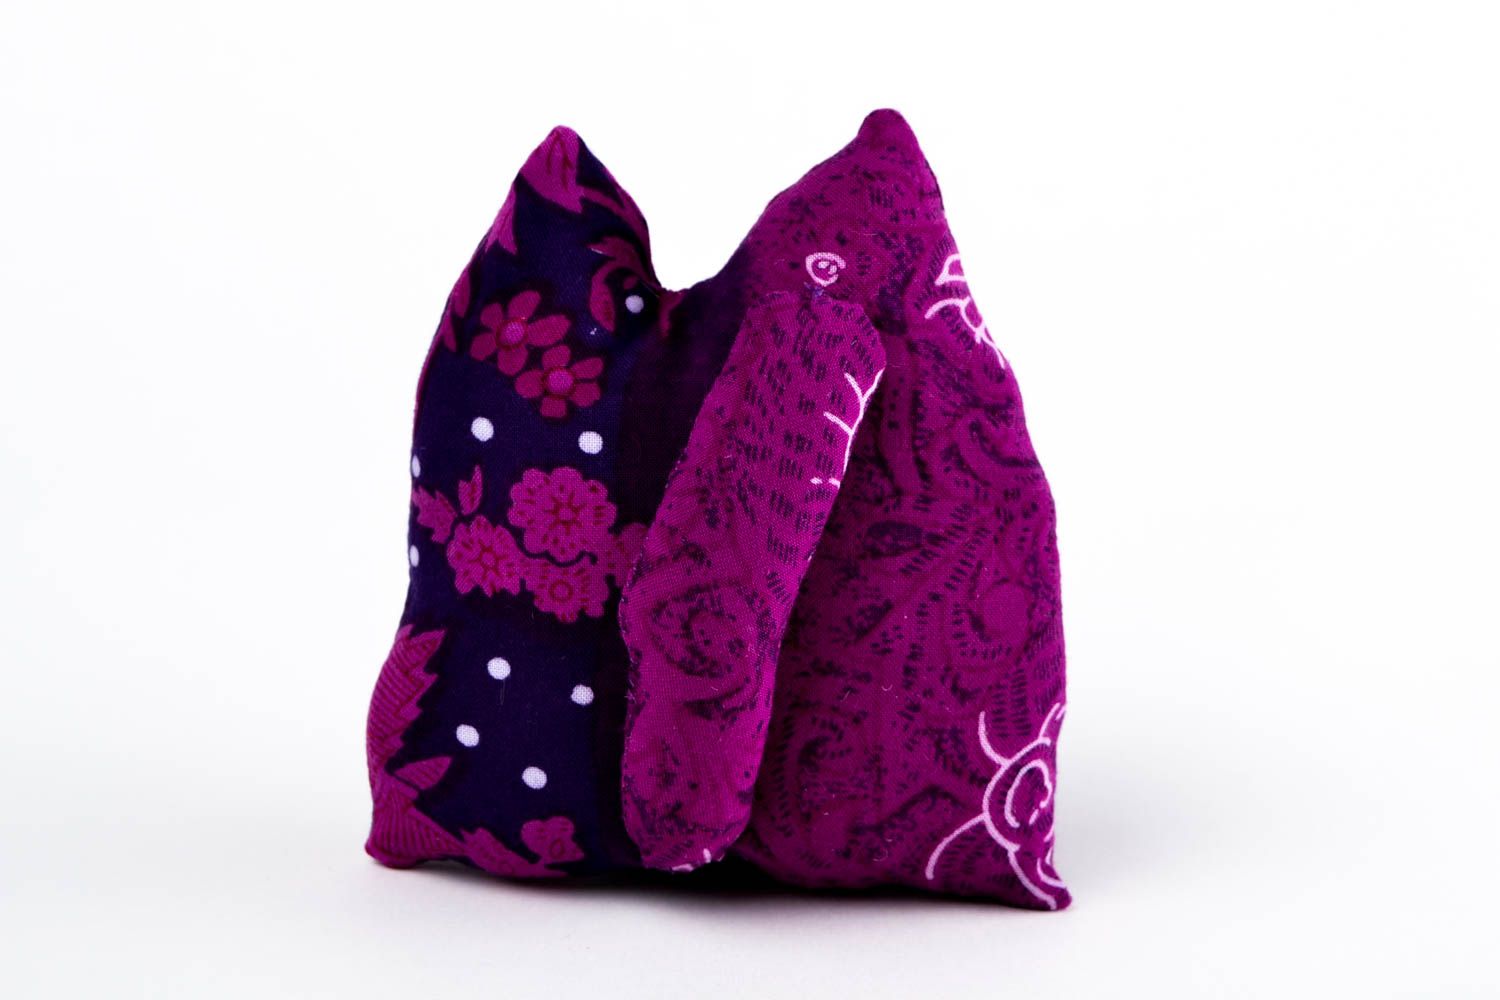 Spielzeug aus Stoff handmade Katze Kuscheltier violett Plüschtier Katze toll foto 4